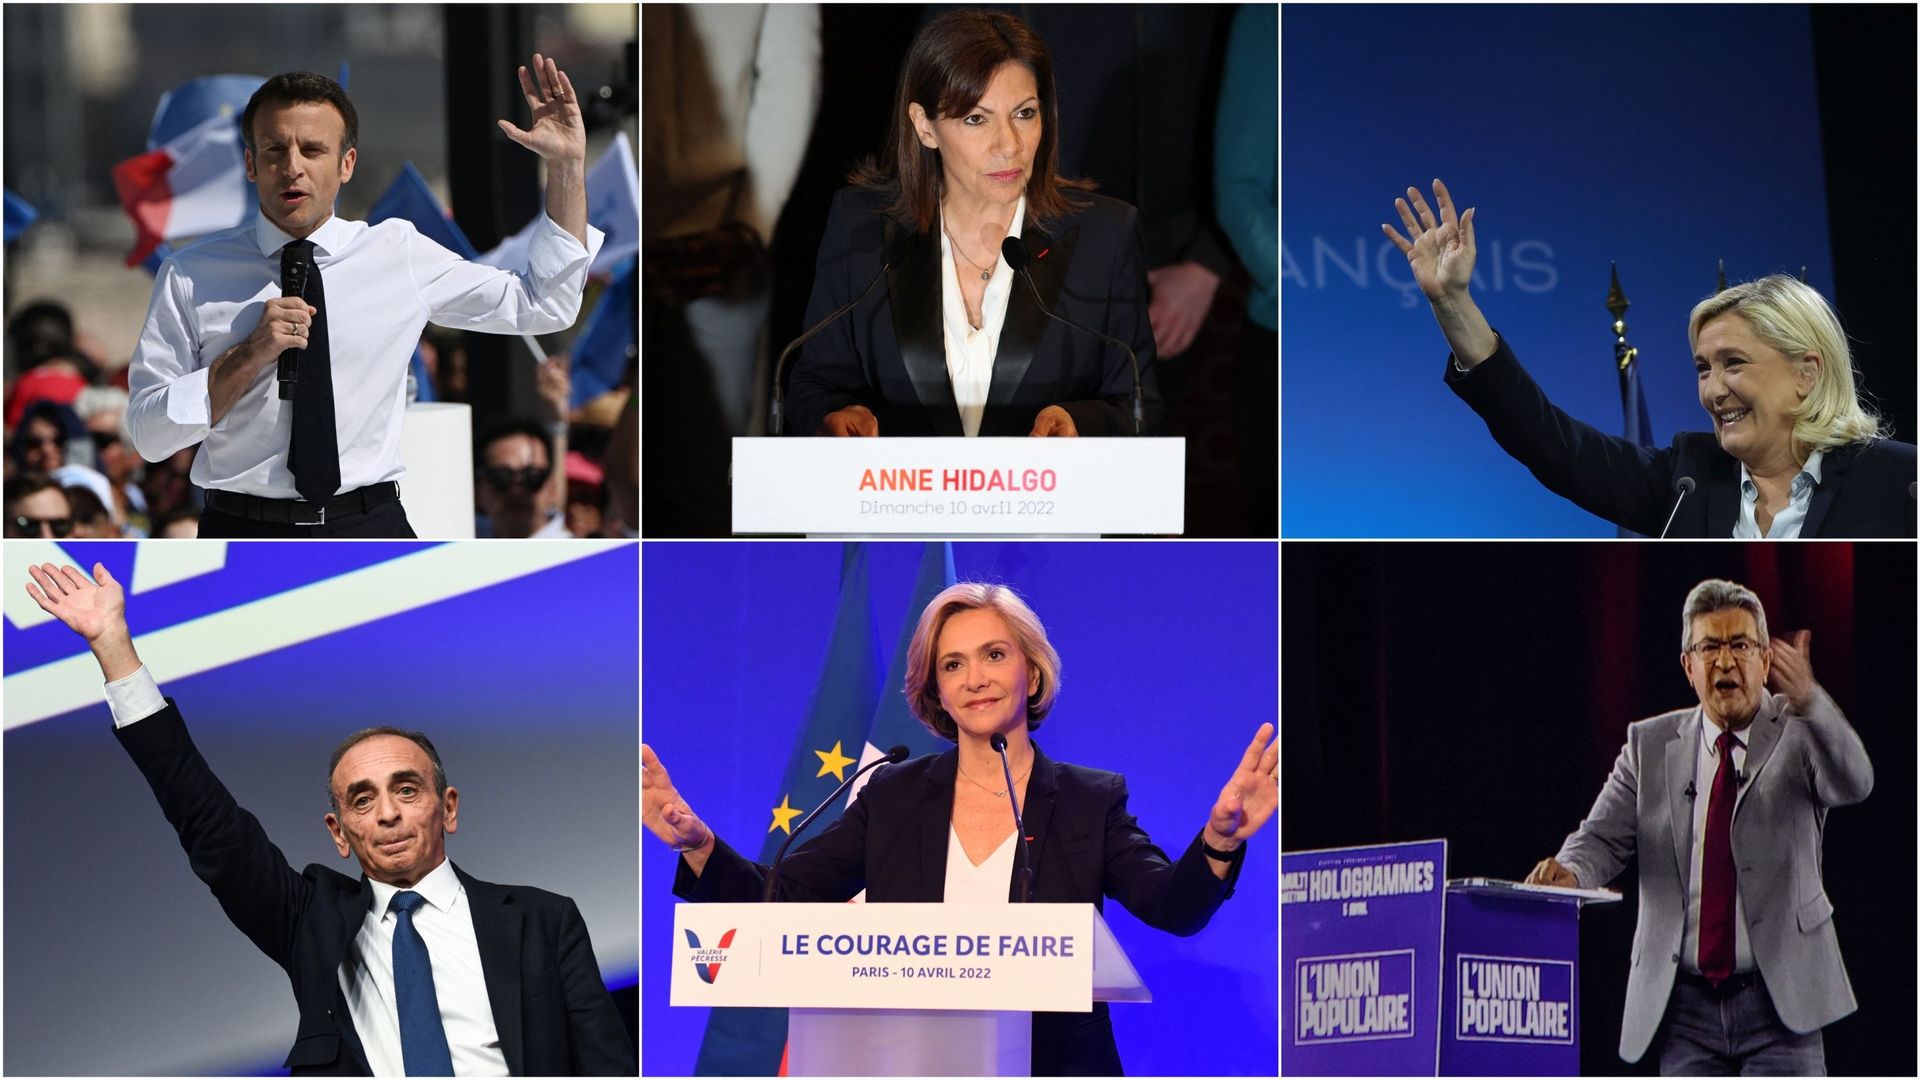 De gauche à droite : Emmanuel Macron (LREM), Anne Hidalgo (PS), Marine Le Pen (RN), Eric Zemmour (Reconquête), Valérie Pécresse (LR), Jean-Luc Mélenchon (France insoumise)